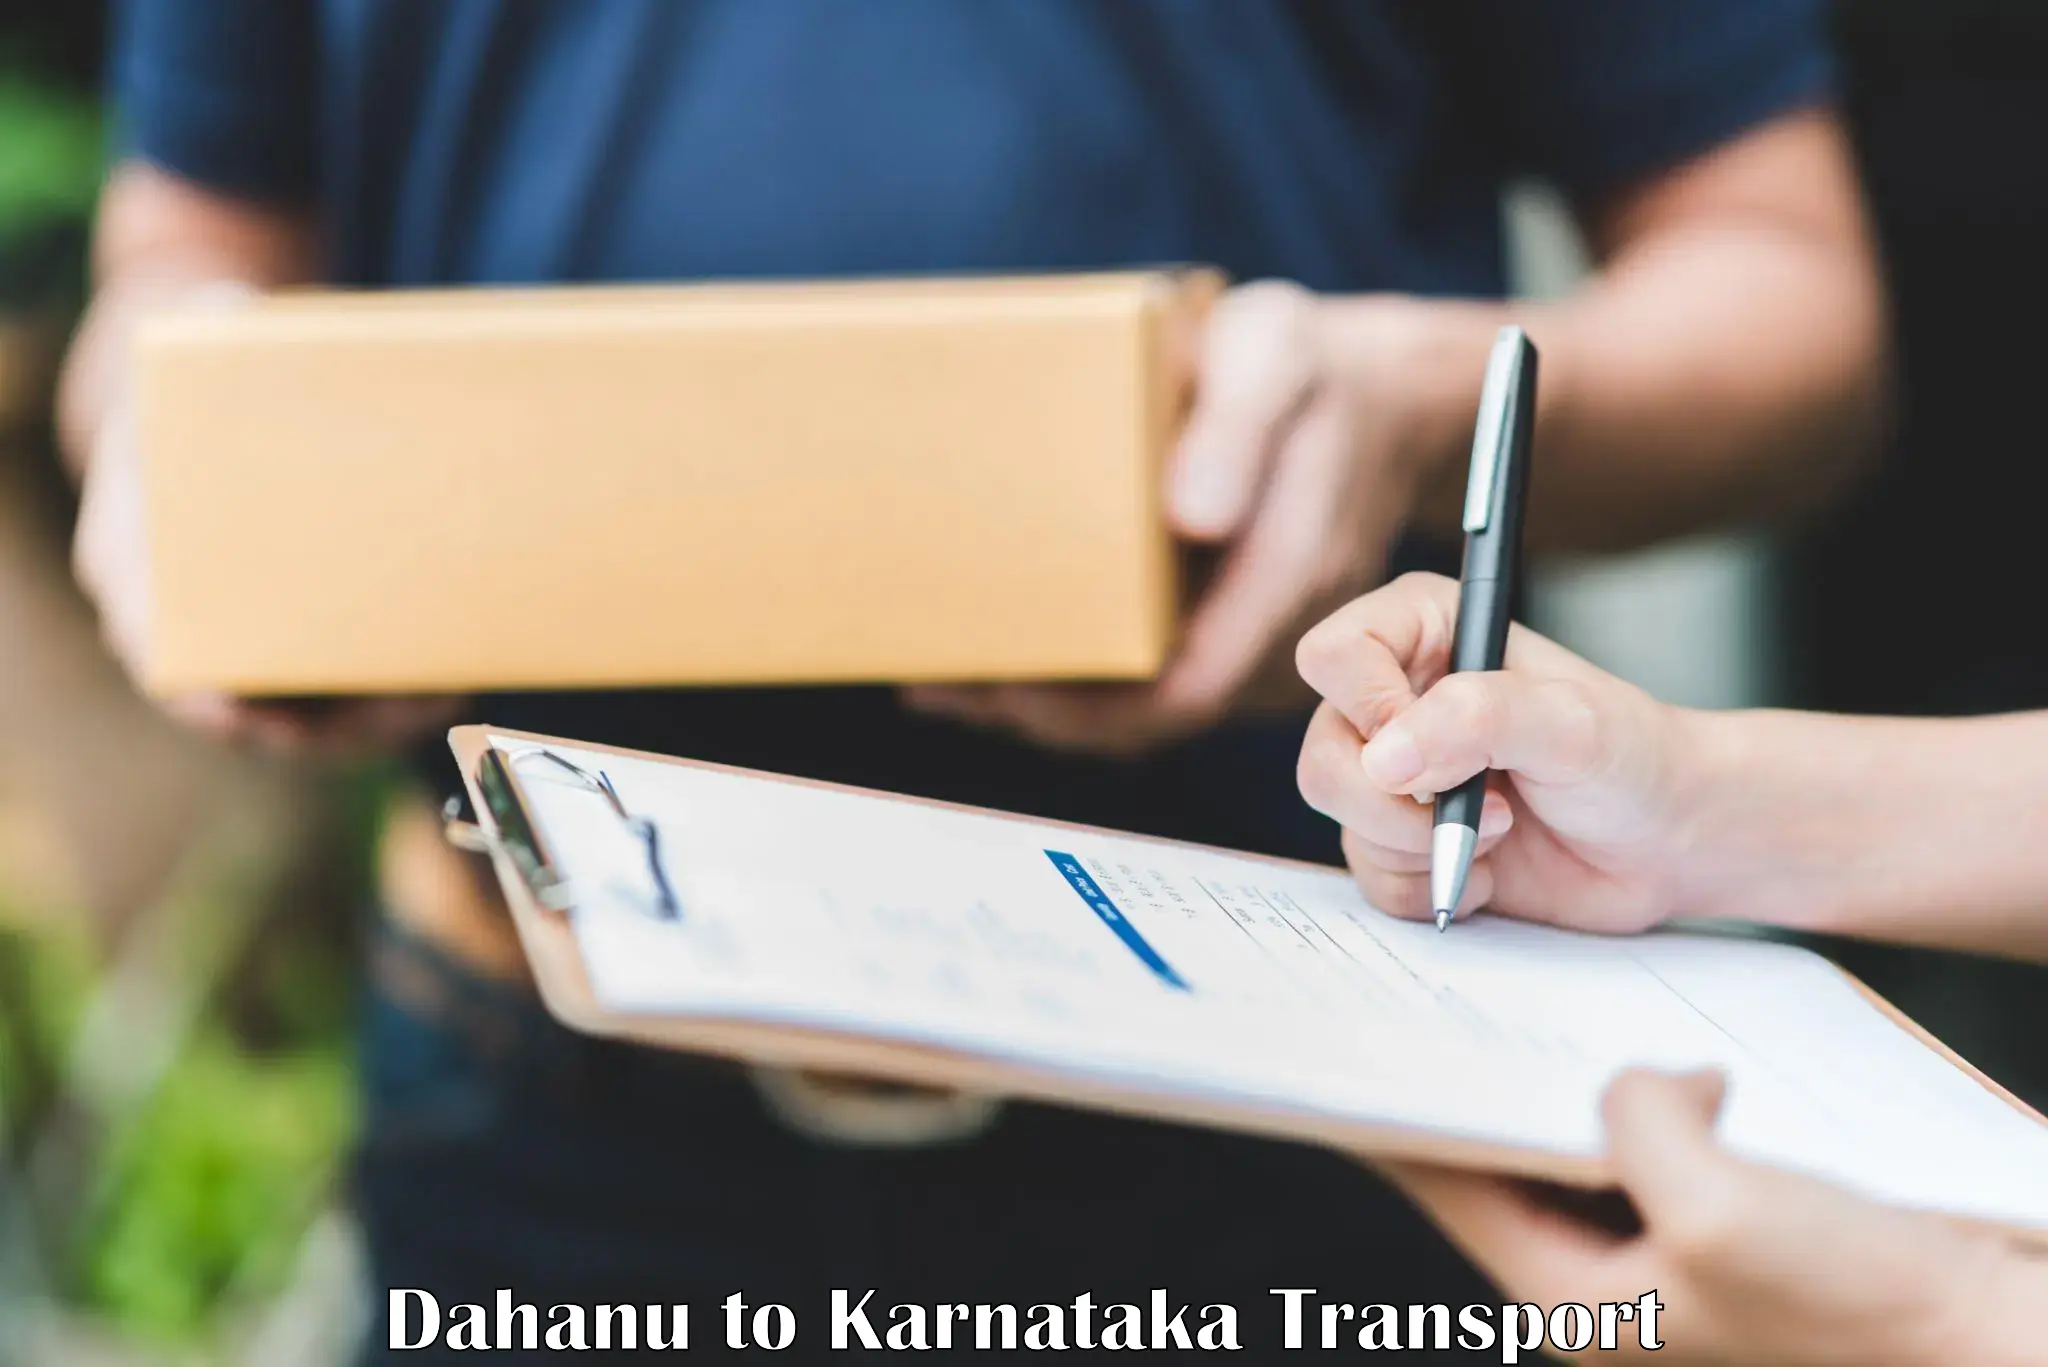 Bike transport service Dahanu to Saraswathipuram